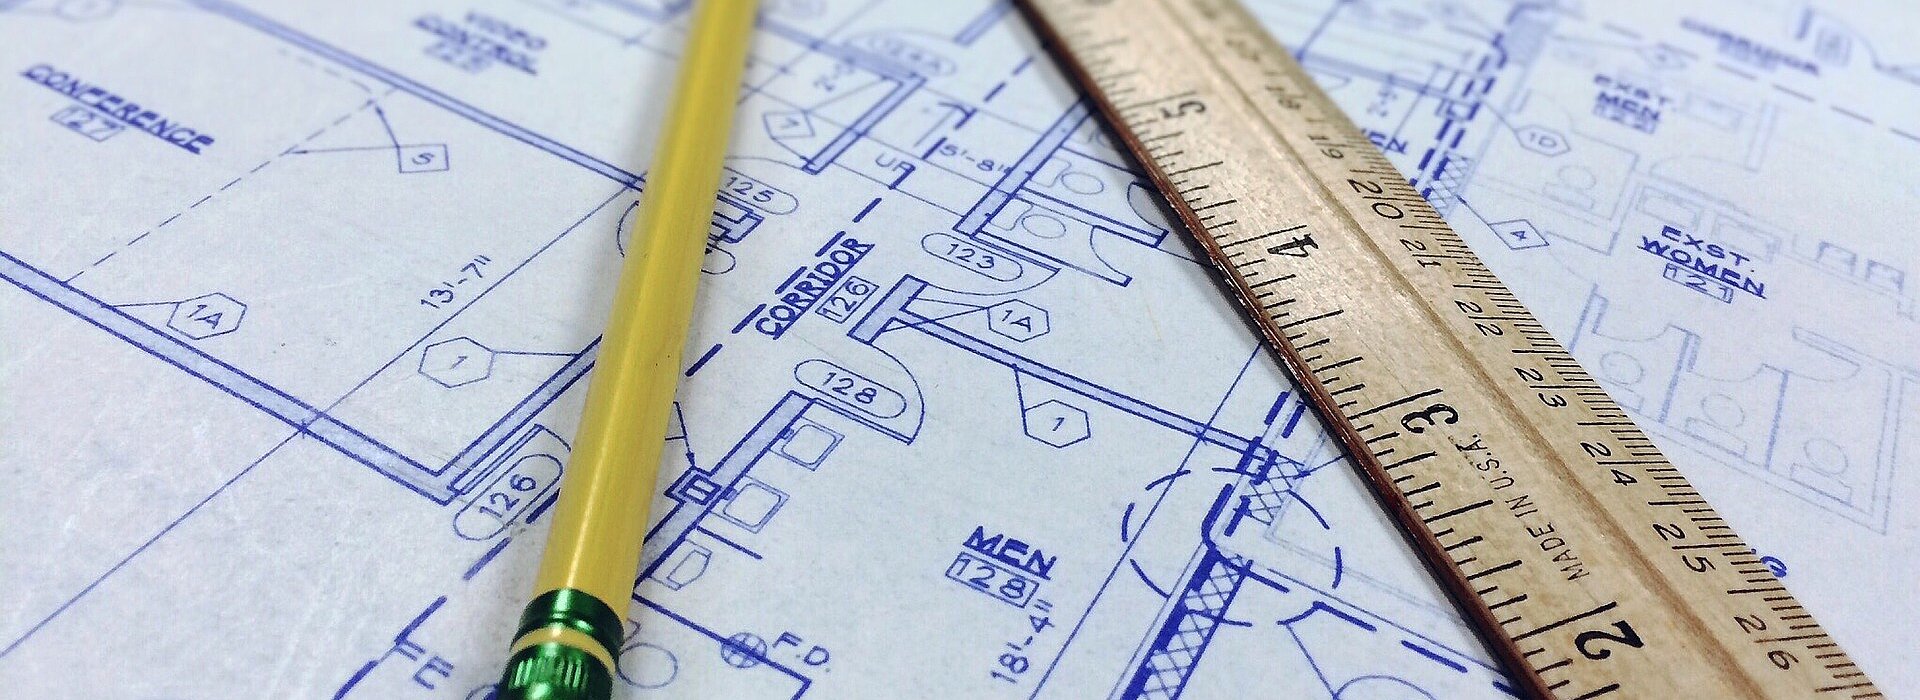 Imagem com um projeto de arquitetura desenhado no papel e junto com um lápis e uma régua